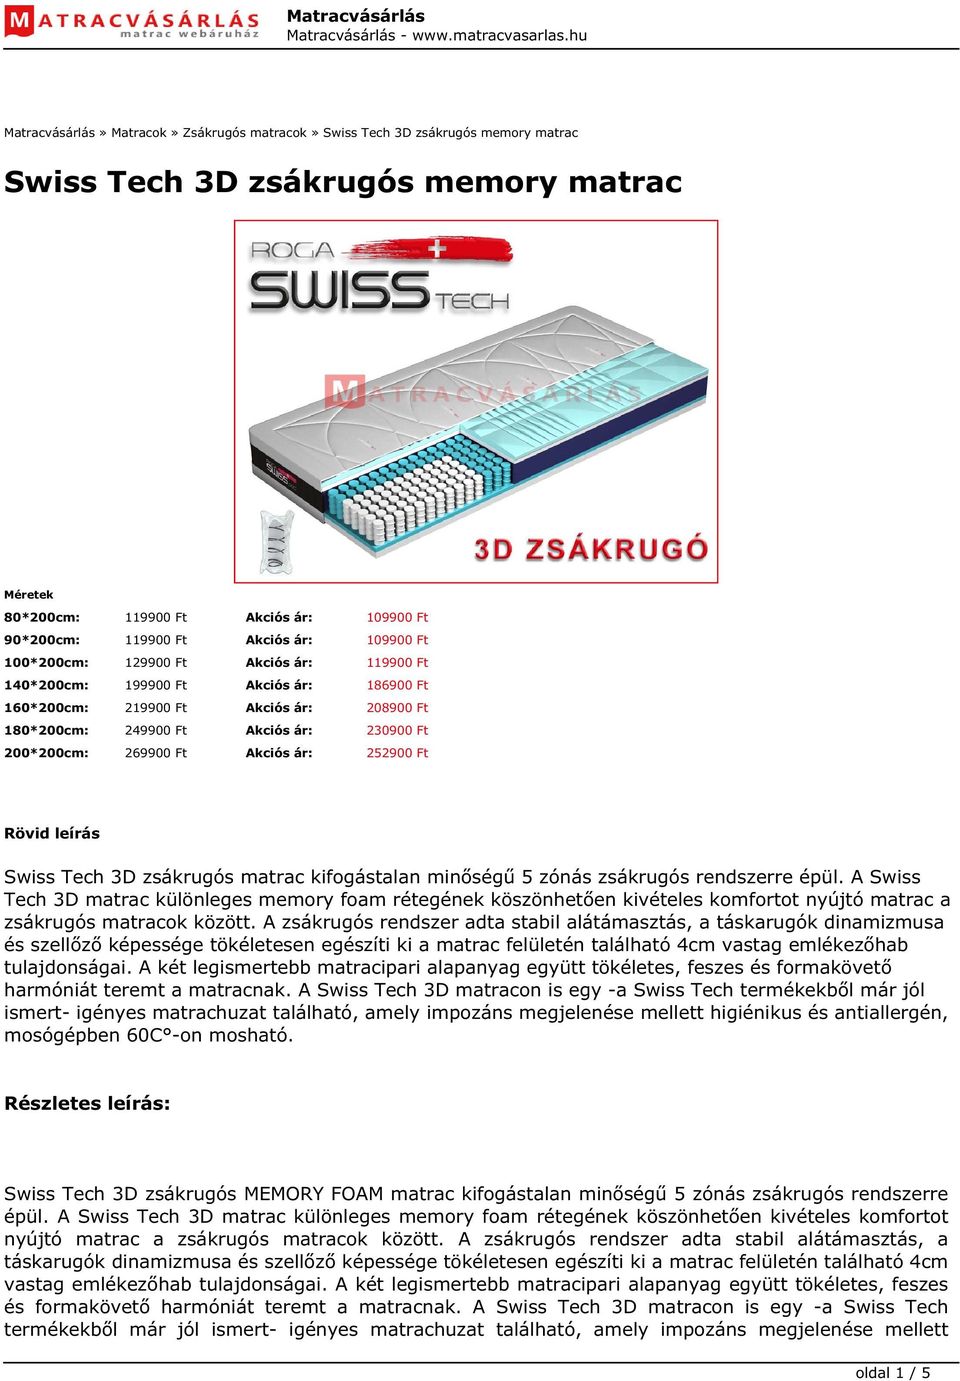 Swiss Tech 3D zsákrugós memory matrac - PDF Ingyenes letöltés